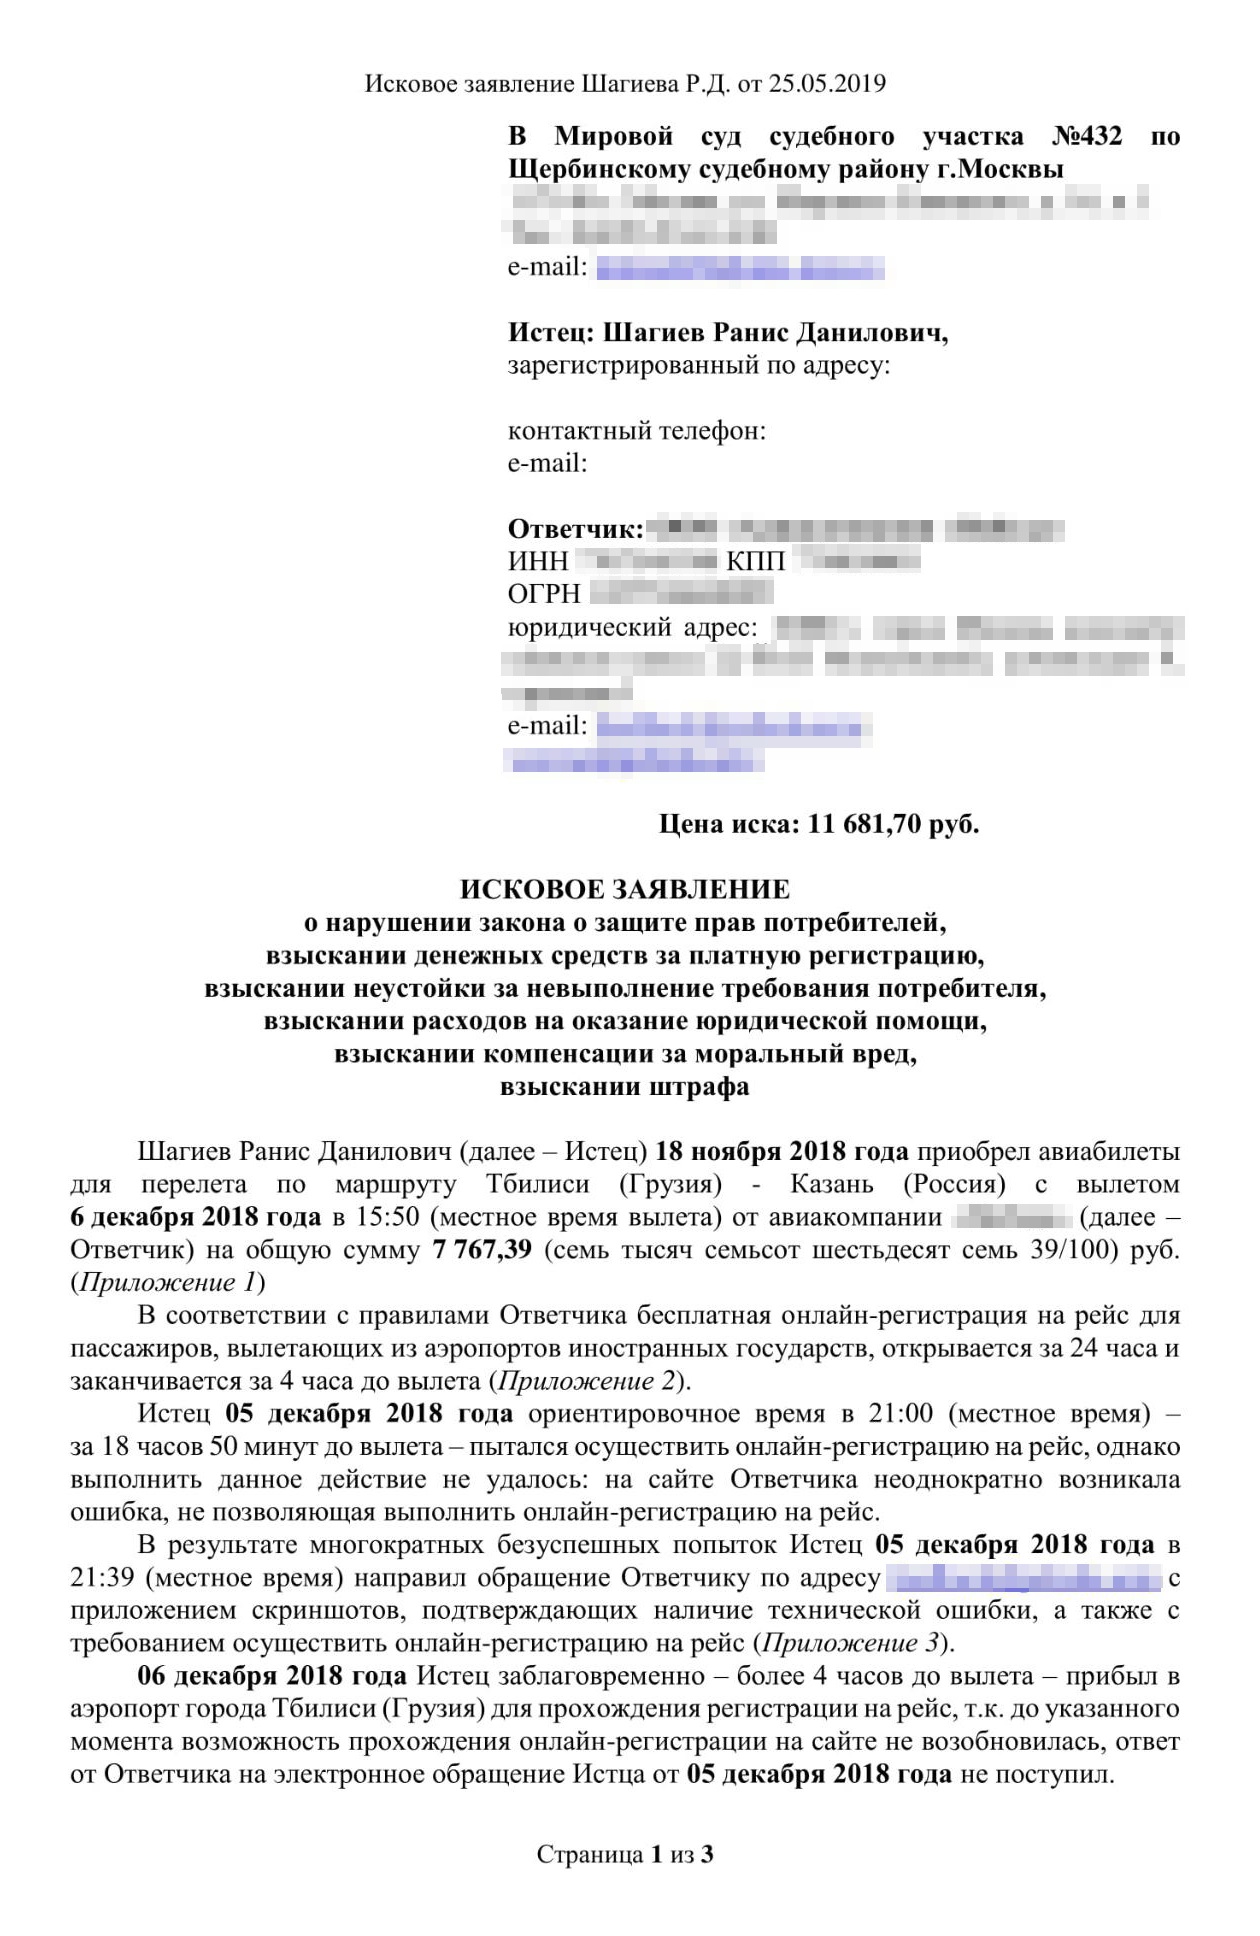 Текст моего искового заявления в московский суд